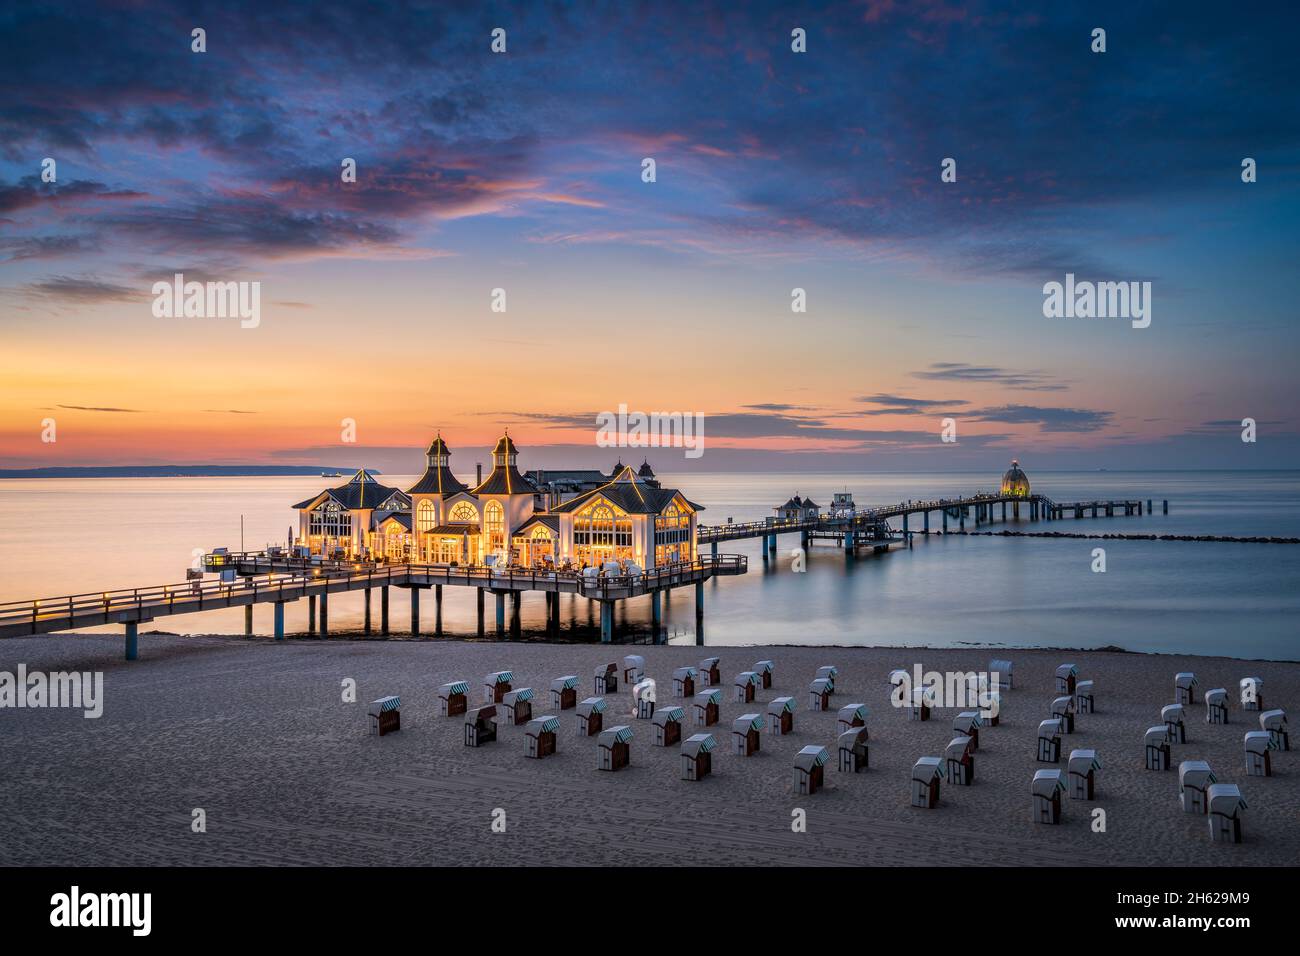 Sonnenuntergang am sellin Pier auf der insel rügen, deutschland Stockfoto